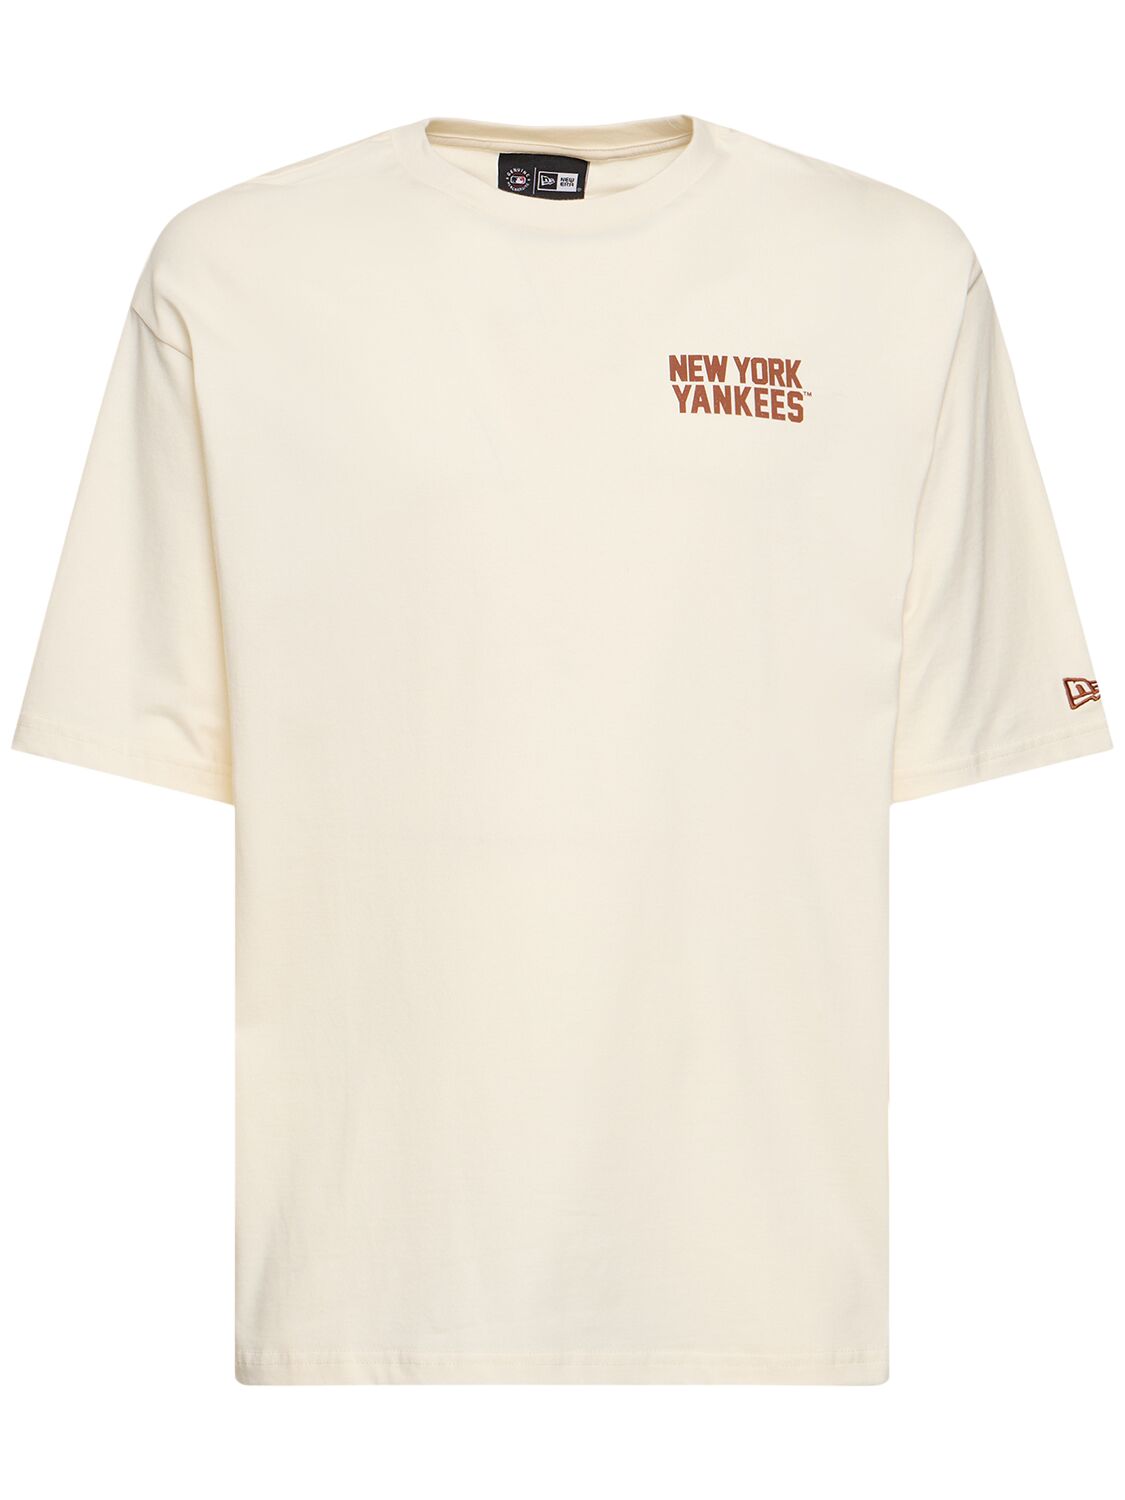 Image of Ny Yankees Mlb Wordmark Oversize T-shirt